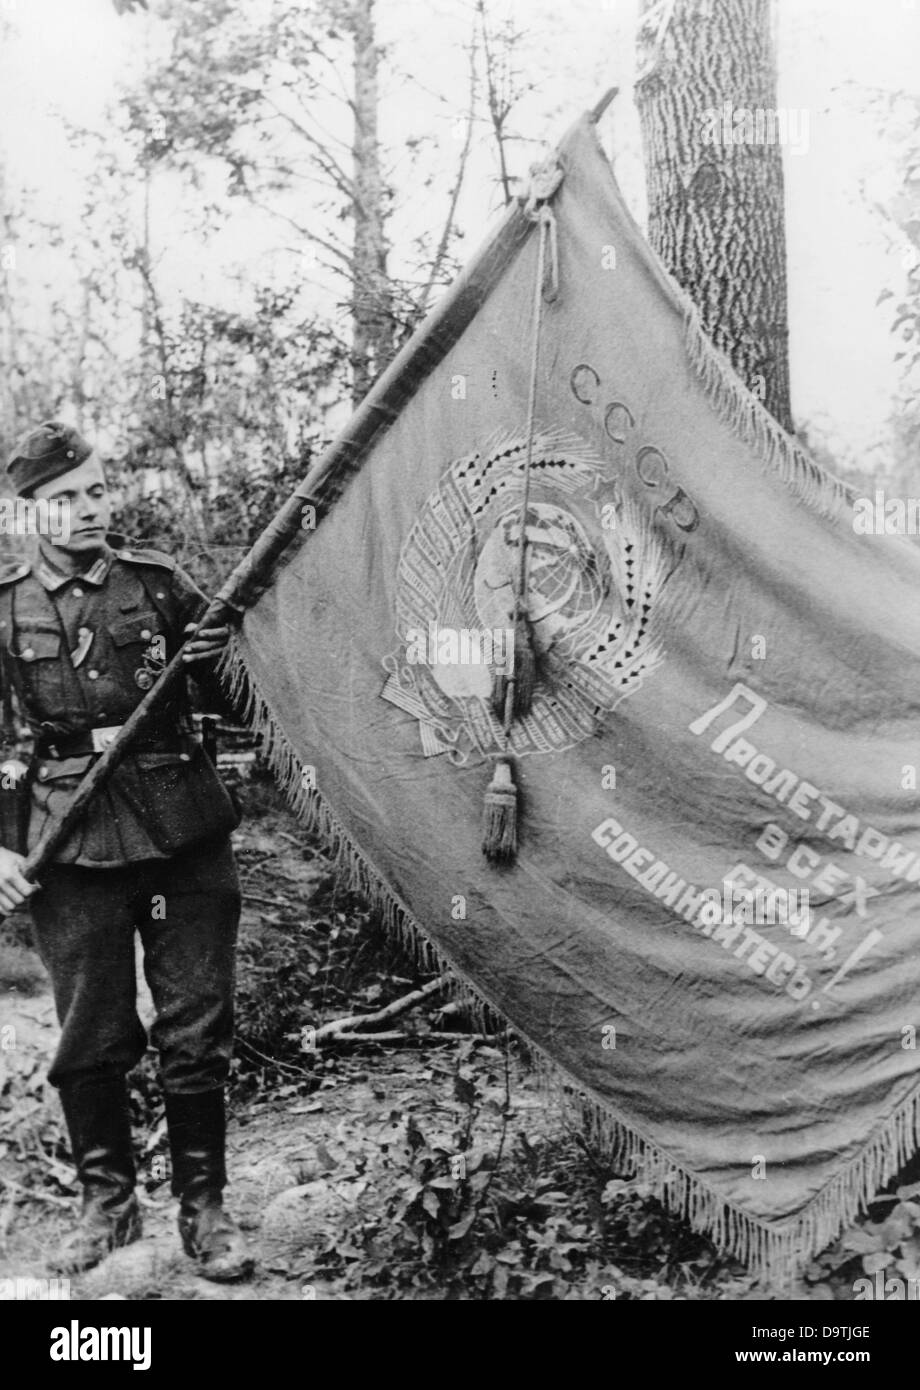 La propagande nazie! Sur le dos de l'image se lit: 'Les maux de guerre du lac Ladoga. Au cours de lourdes actions défensives dans le sud du lac Ladoga, ce drapeau soviétique a été capturé. 'Les prolétaires du monde s'unissent !' est la devise sous laquelle ses porteurs et ceux qui les ont suivis ont été conduits à la mort. » Une image du Front de l'est/Russie, 13 août 1943. L'attaque contre la Russie par le Reich allemand a été acceptée en juillet 1940 et a été préparée depuis décembre 1940 comme l'opération Barbarossa. Le 22 juin 1941, l'invasion de l'Union soviétique par la Wehrmacht allemande a commencé. Fotoarchiv für Zeitgeschichte Banque D'Images